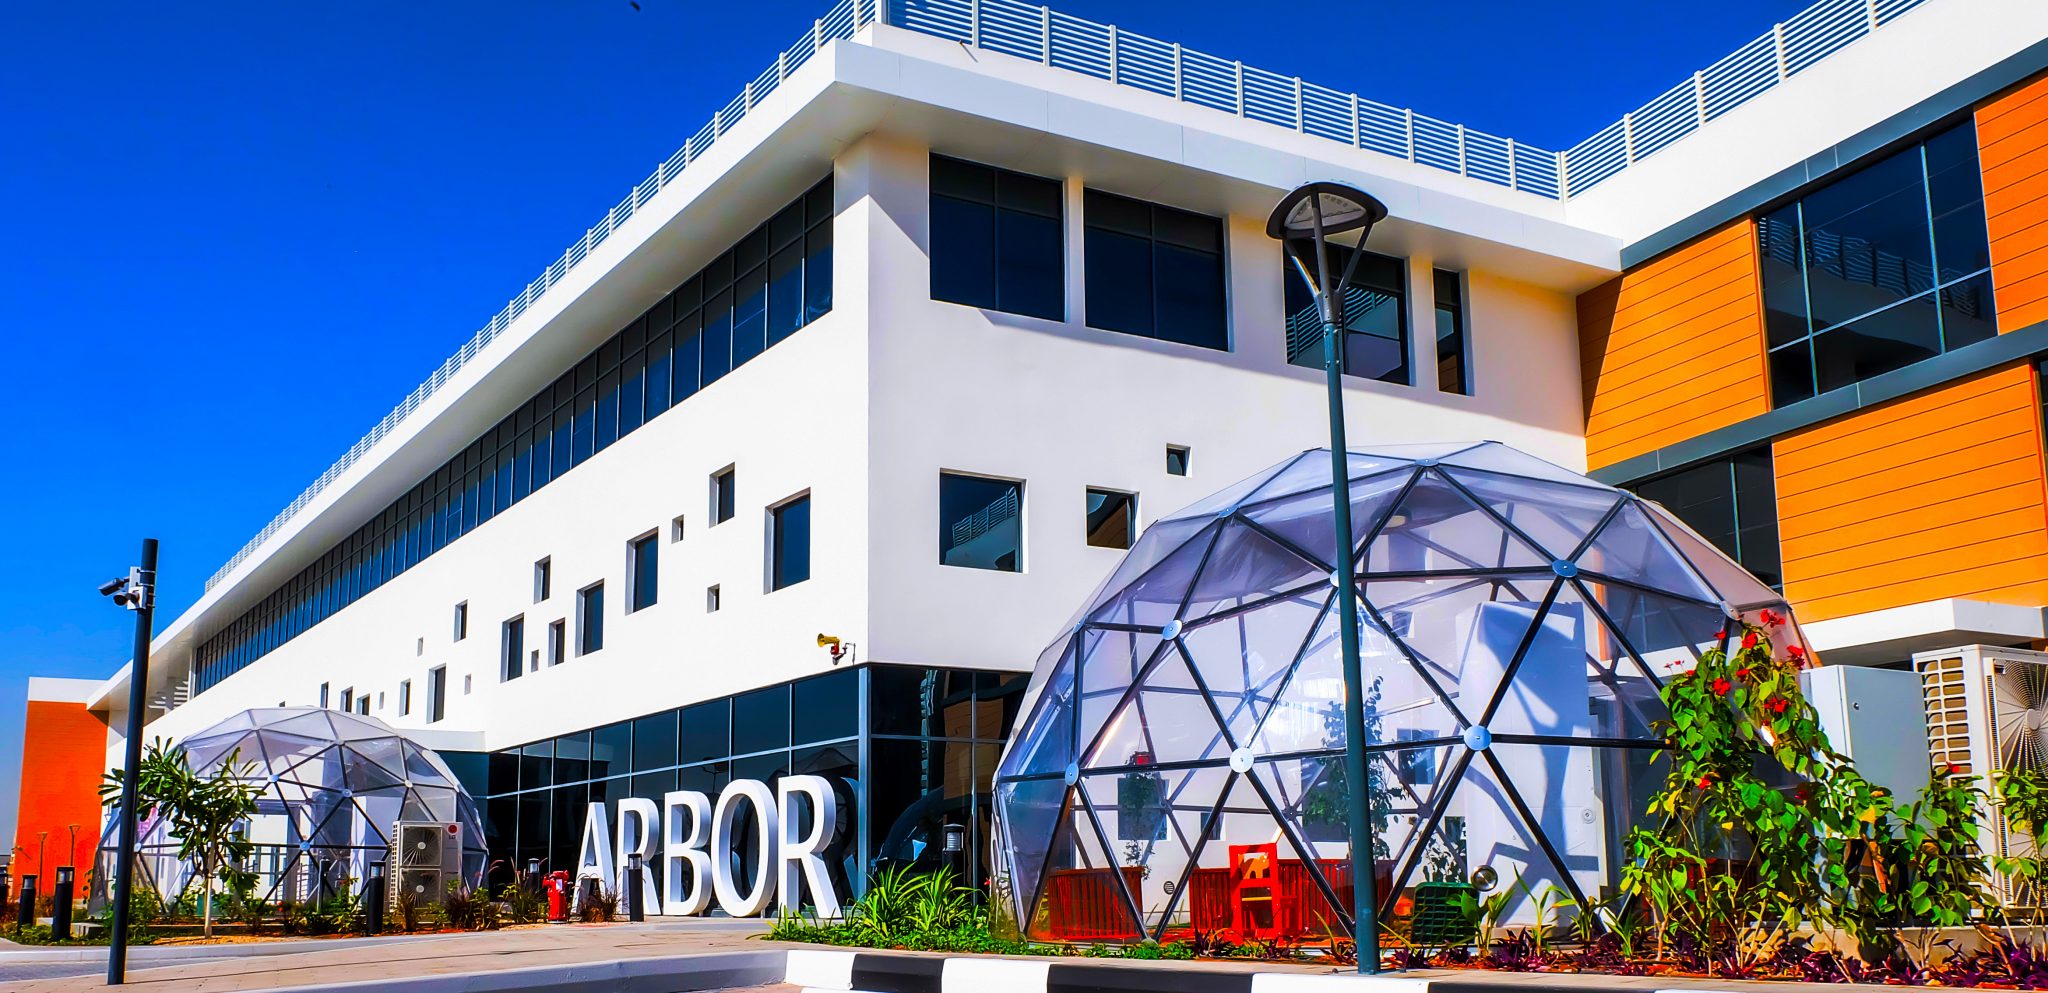 Das Foto der außergewöhnlichen Fassade der Arbor School in Dubai zeigt eines der modernsten Biodome, die im Zentrum der Ausbildung ihrer Schüler stehen.